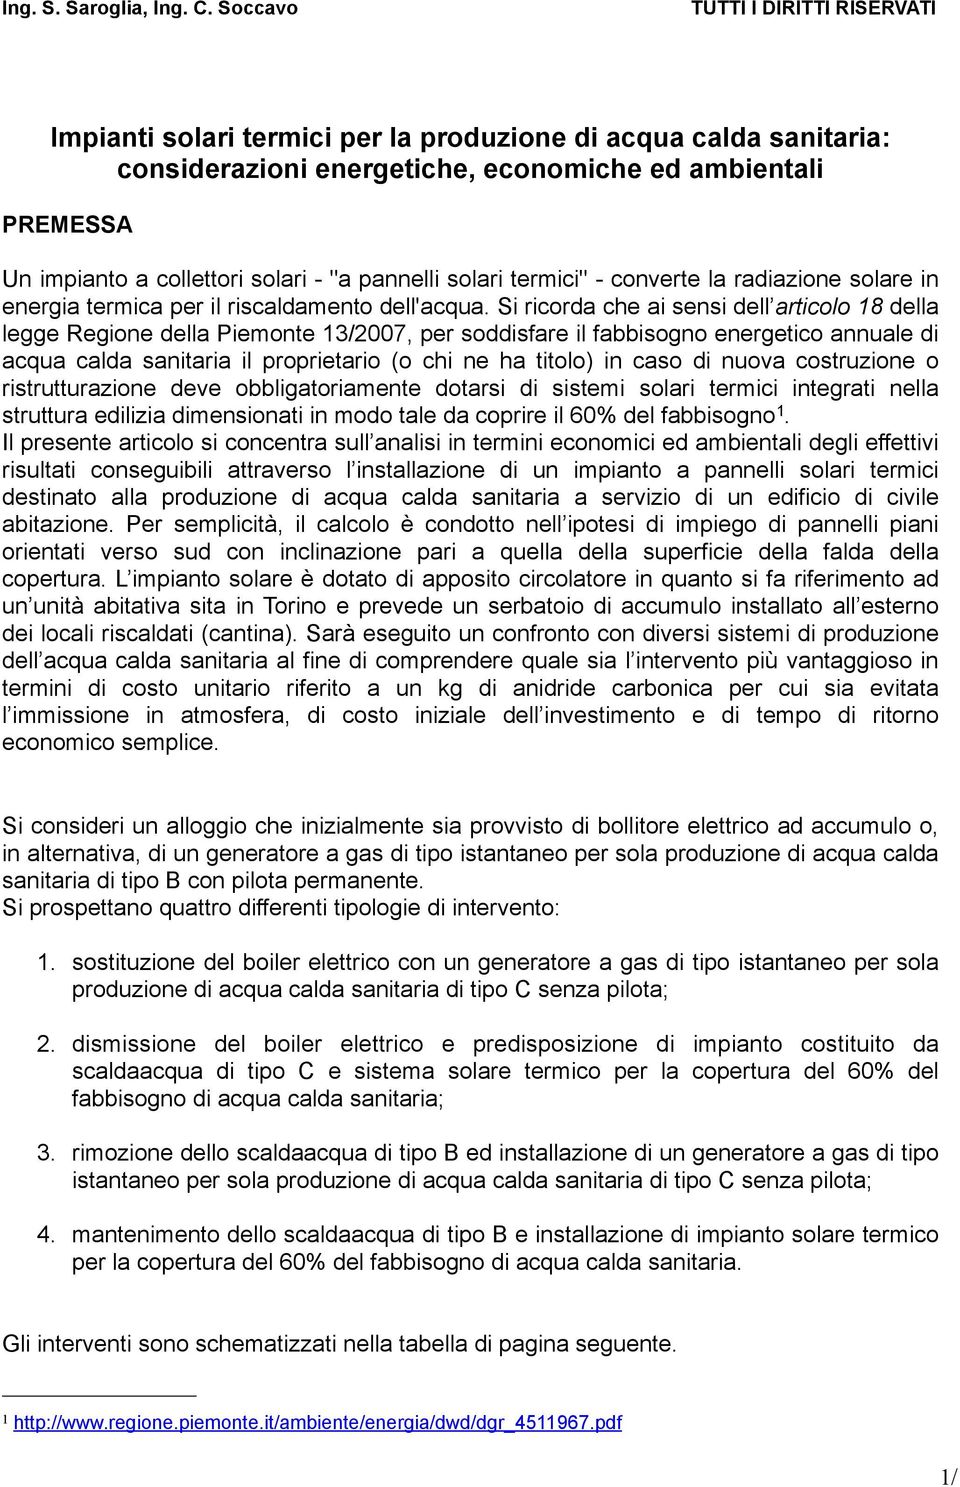 Si ricorda che ai sensi dell articolo 18 della legge Regione della Piemonte 13/2007, per soddisfare il fabbisogno energetico annuale di acqua calda sanitaria il proprietario (o chi ne ha titolo) in